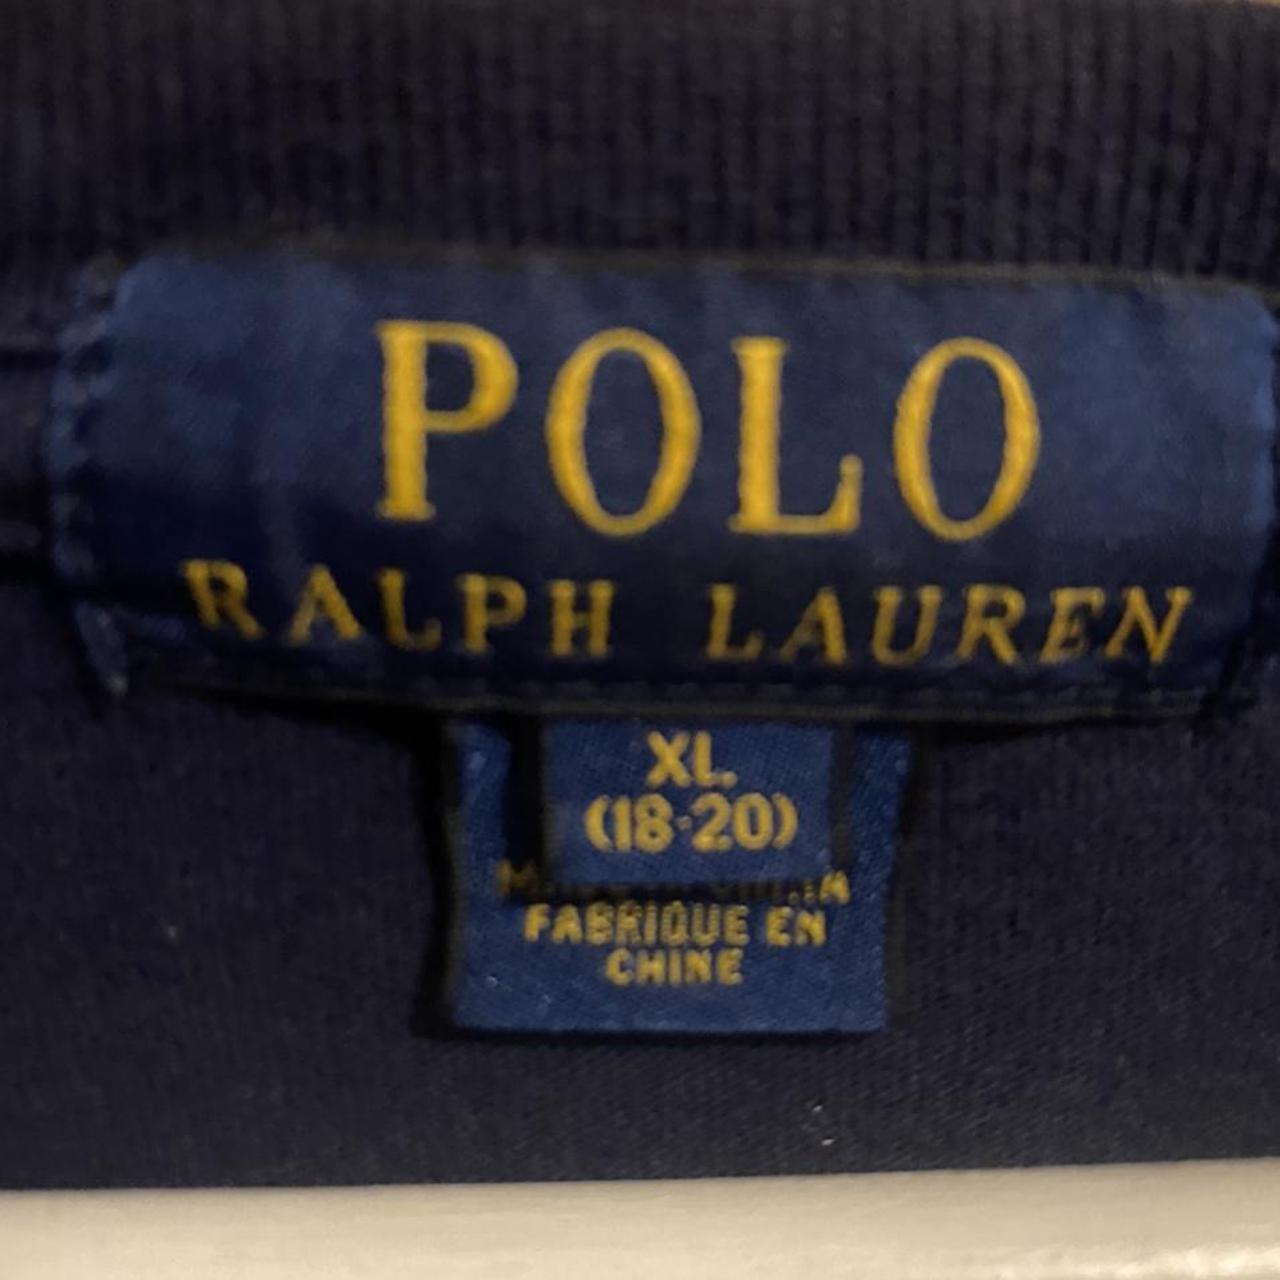 Ralph Lauren long sleeve t-shirt Size XL (18-20)... - Depop